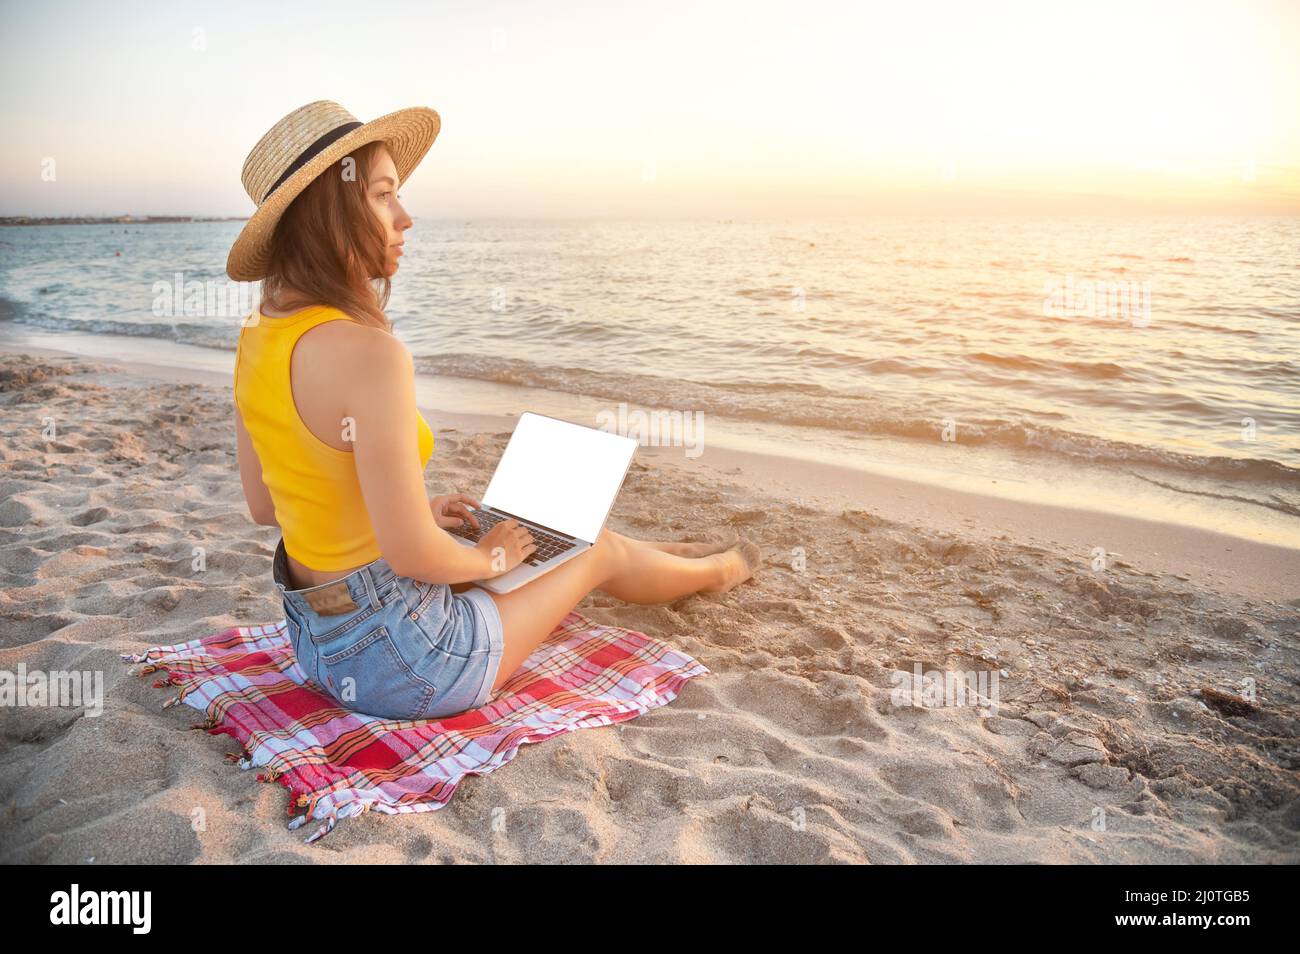 Junge kaukasische Frau in Shorts und einem Hut am Strand, sitzt auf dem Sand, browst soziale Netzwerke auf dem Computer im Sommer ein Stockfoto